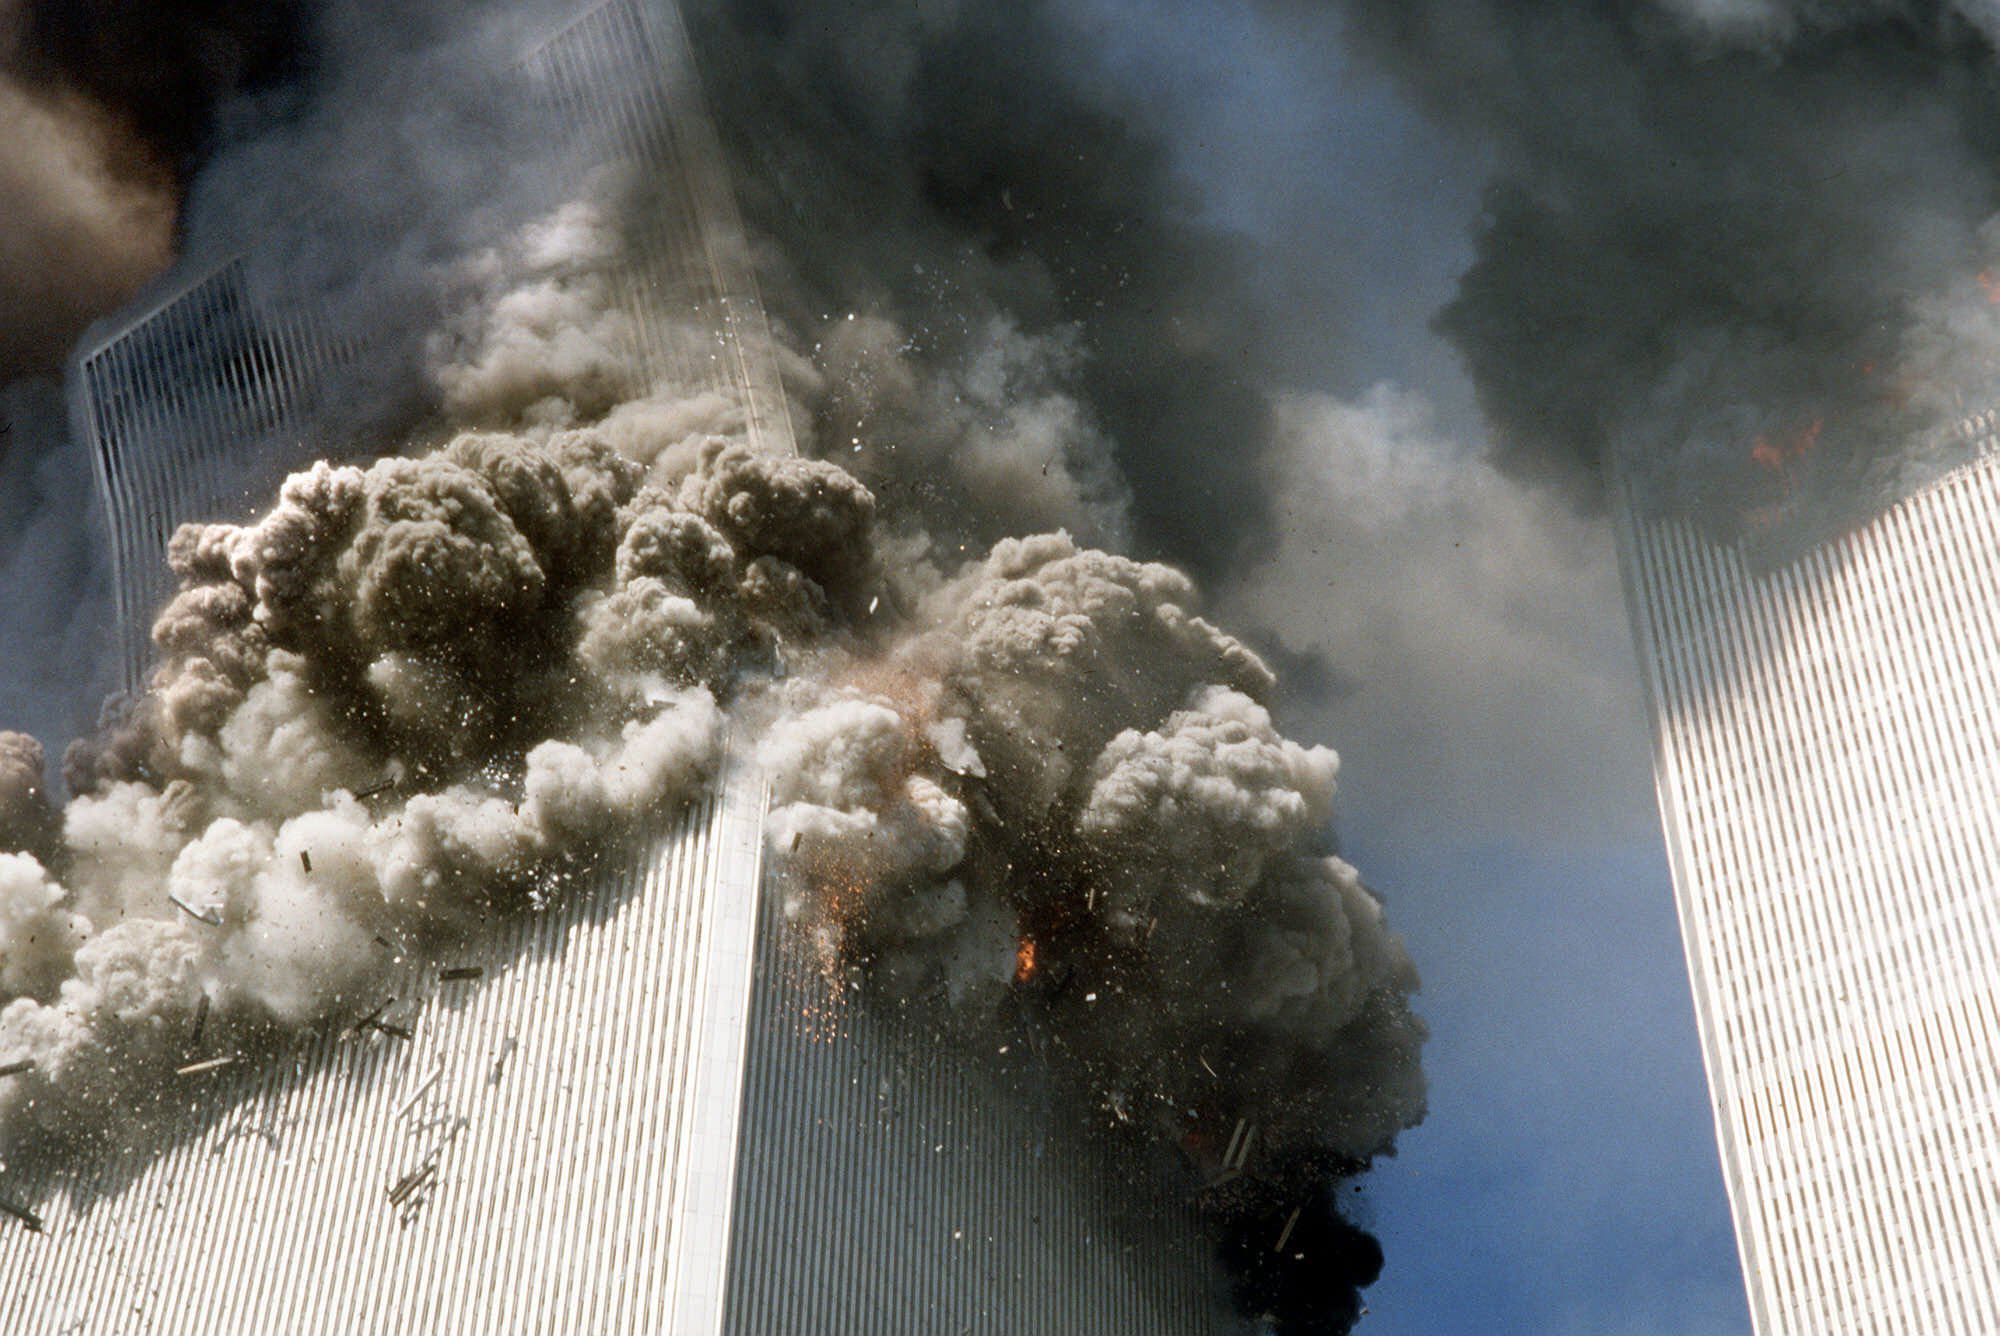 המגדל הדרומי של מגדלי התאומים בניו יורק קורס, 11 בספטמבר 2001 (צילום: AP Photo/Gulnara Samoilova)